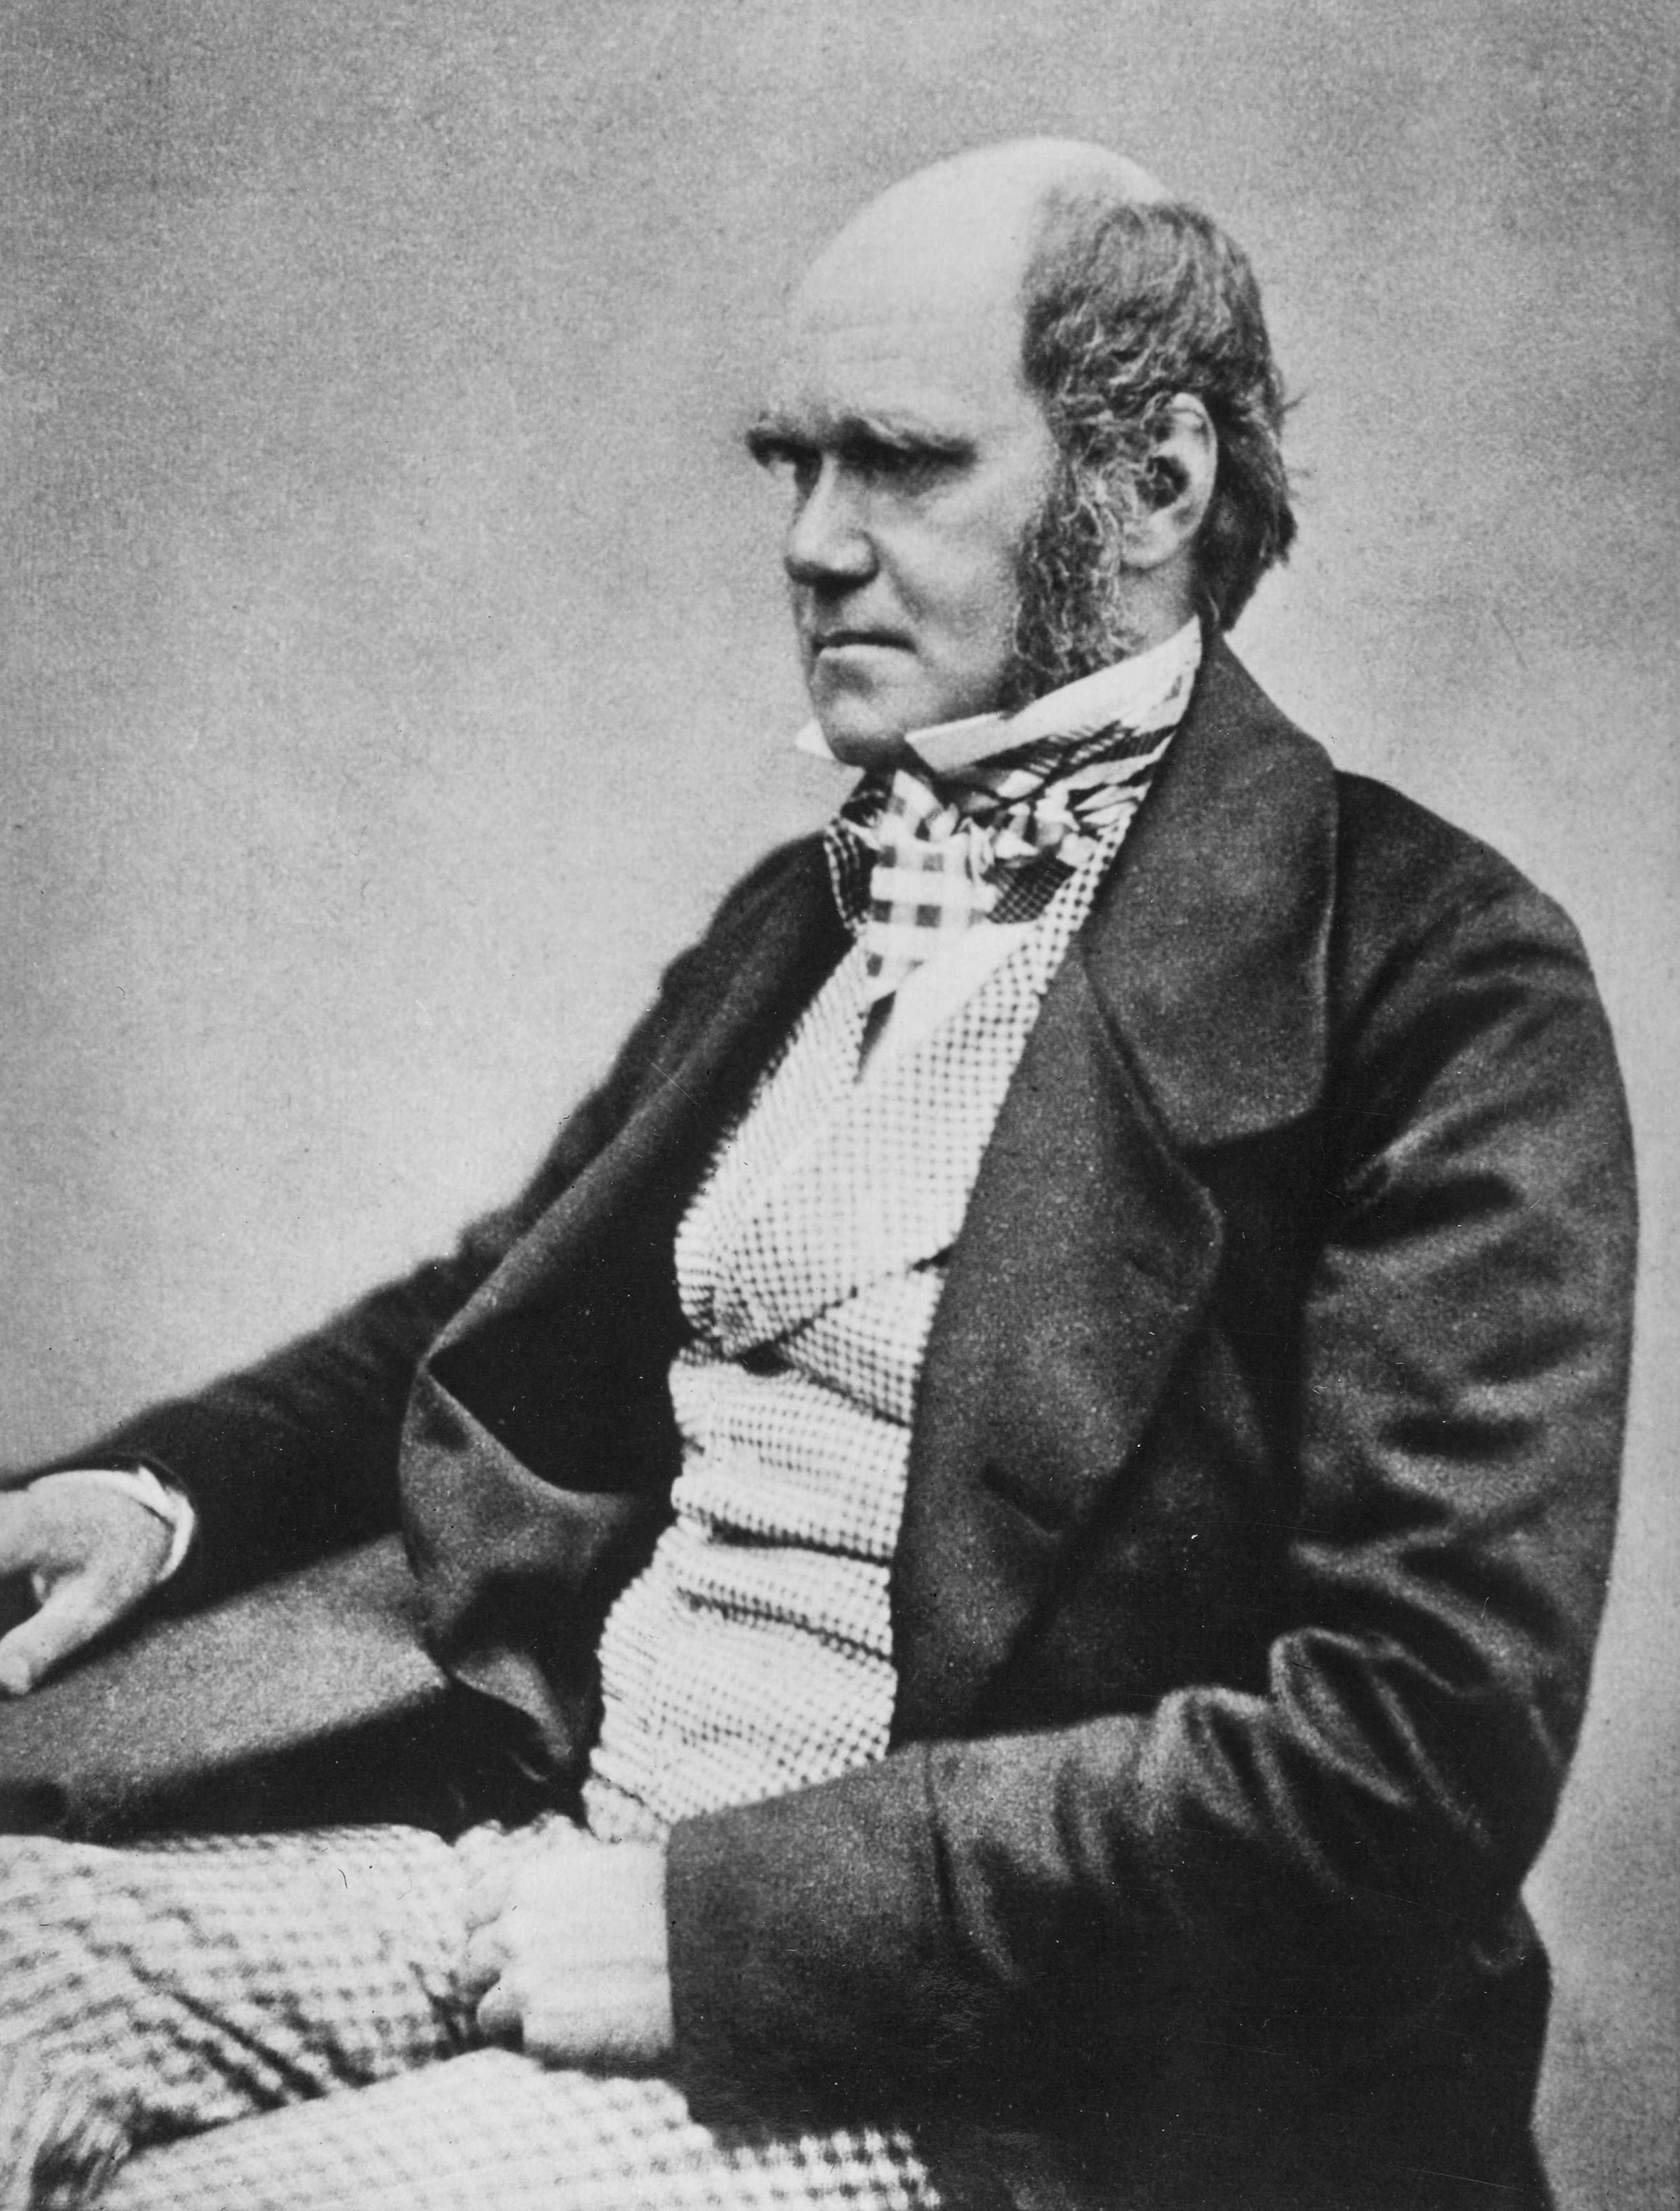 Fotografie Charlese Roberta Darwina, pořízená pravděpodobně v roce 1854, tedy pět let před vydáním jeho stěžejního díla O původu druhů přírodním výběrem. Kredit: Wikipedia (volné dílo)